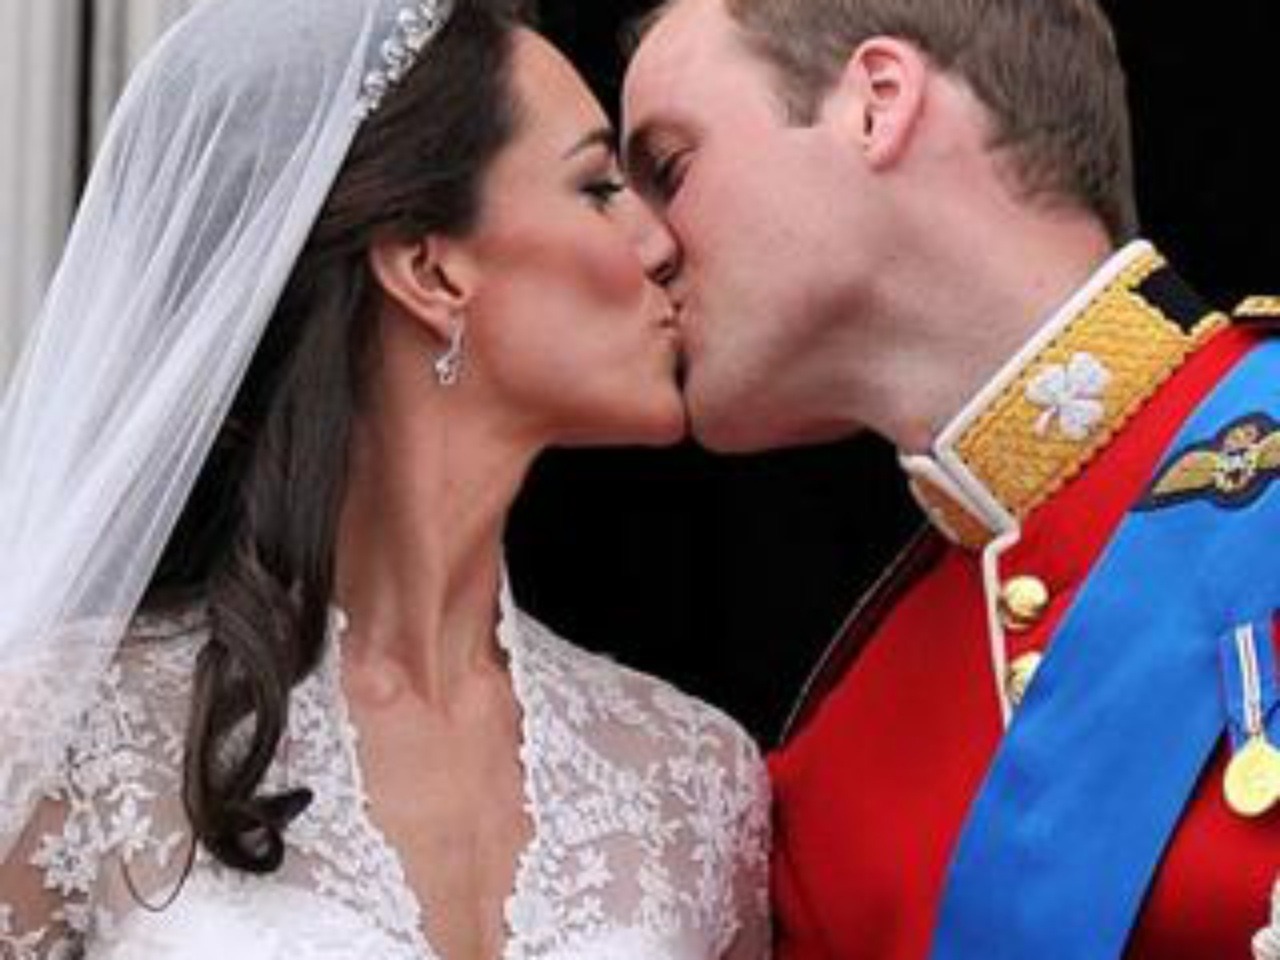 Kate Middletonová a princ William